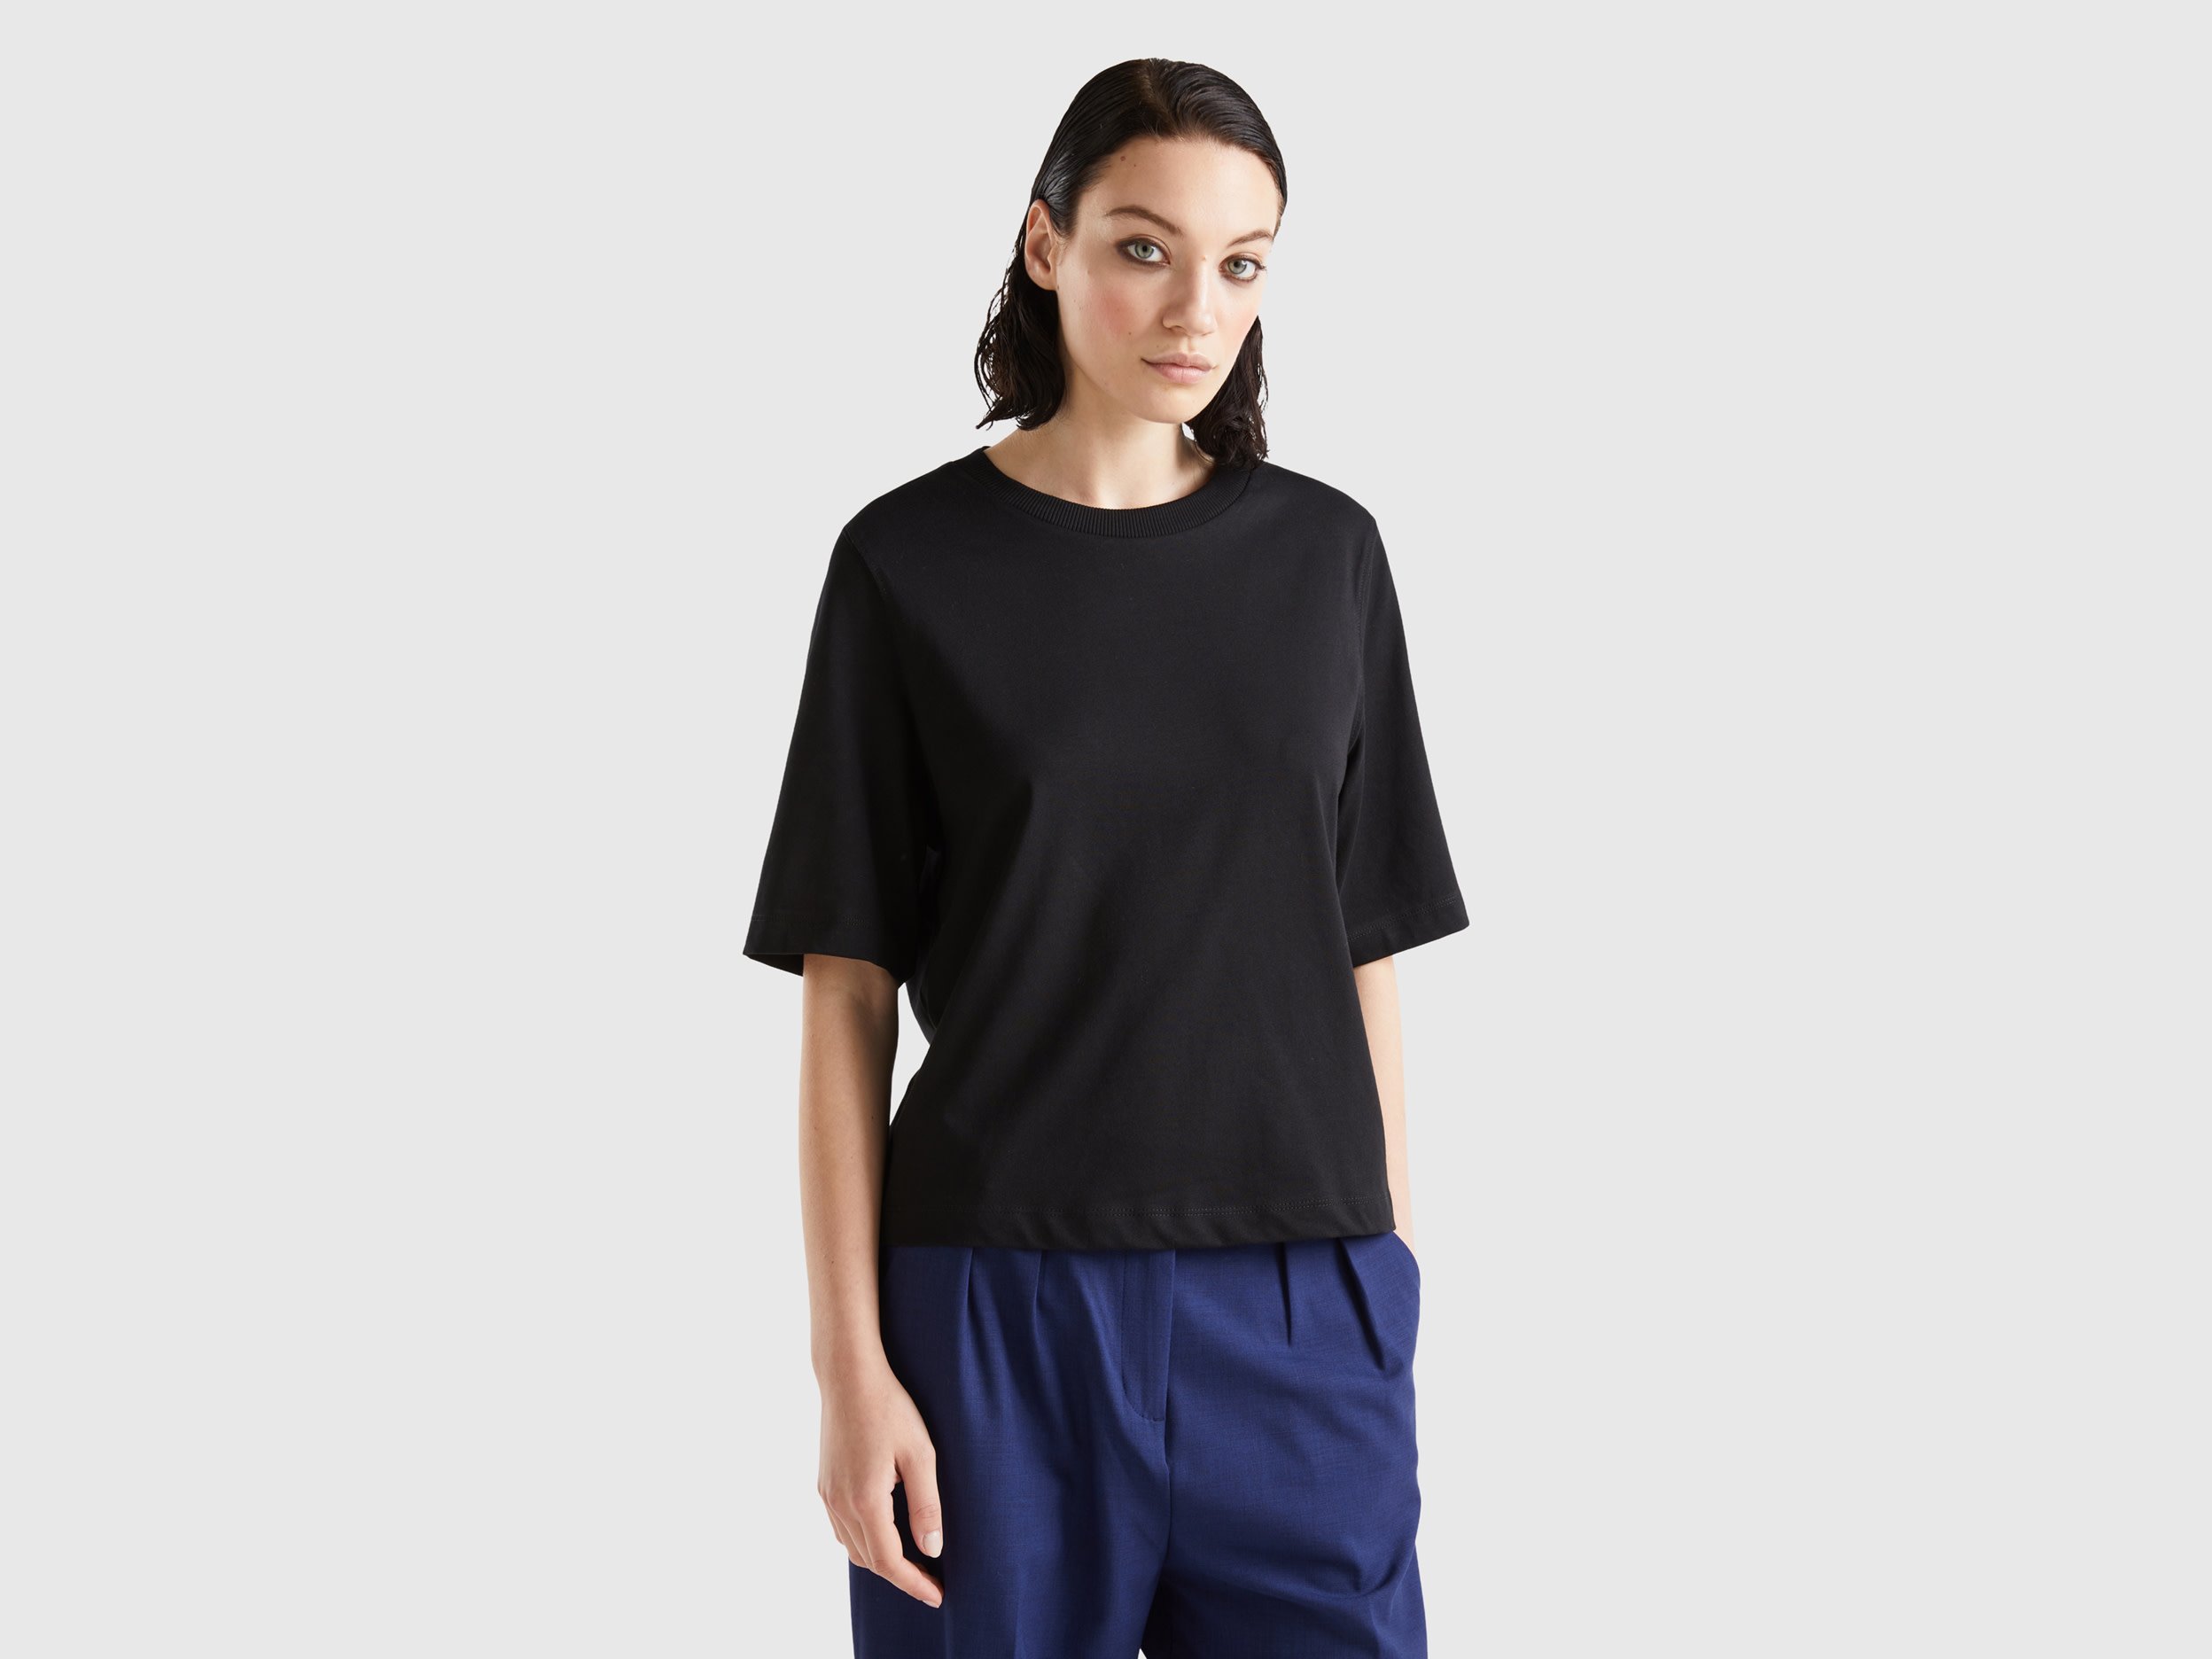 Benetton, 100% Cotton Boxy Fit T-shirt, size XXS, Black, Women